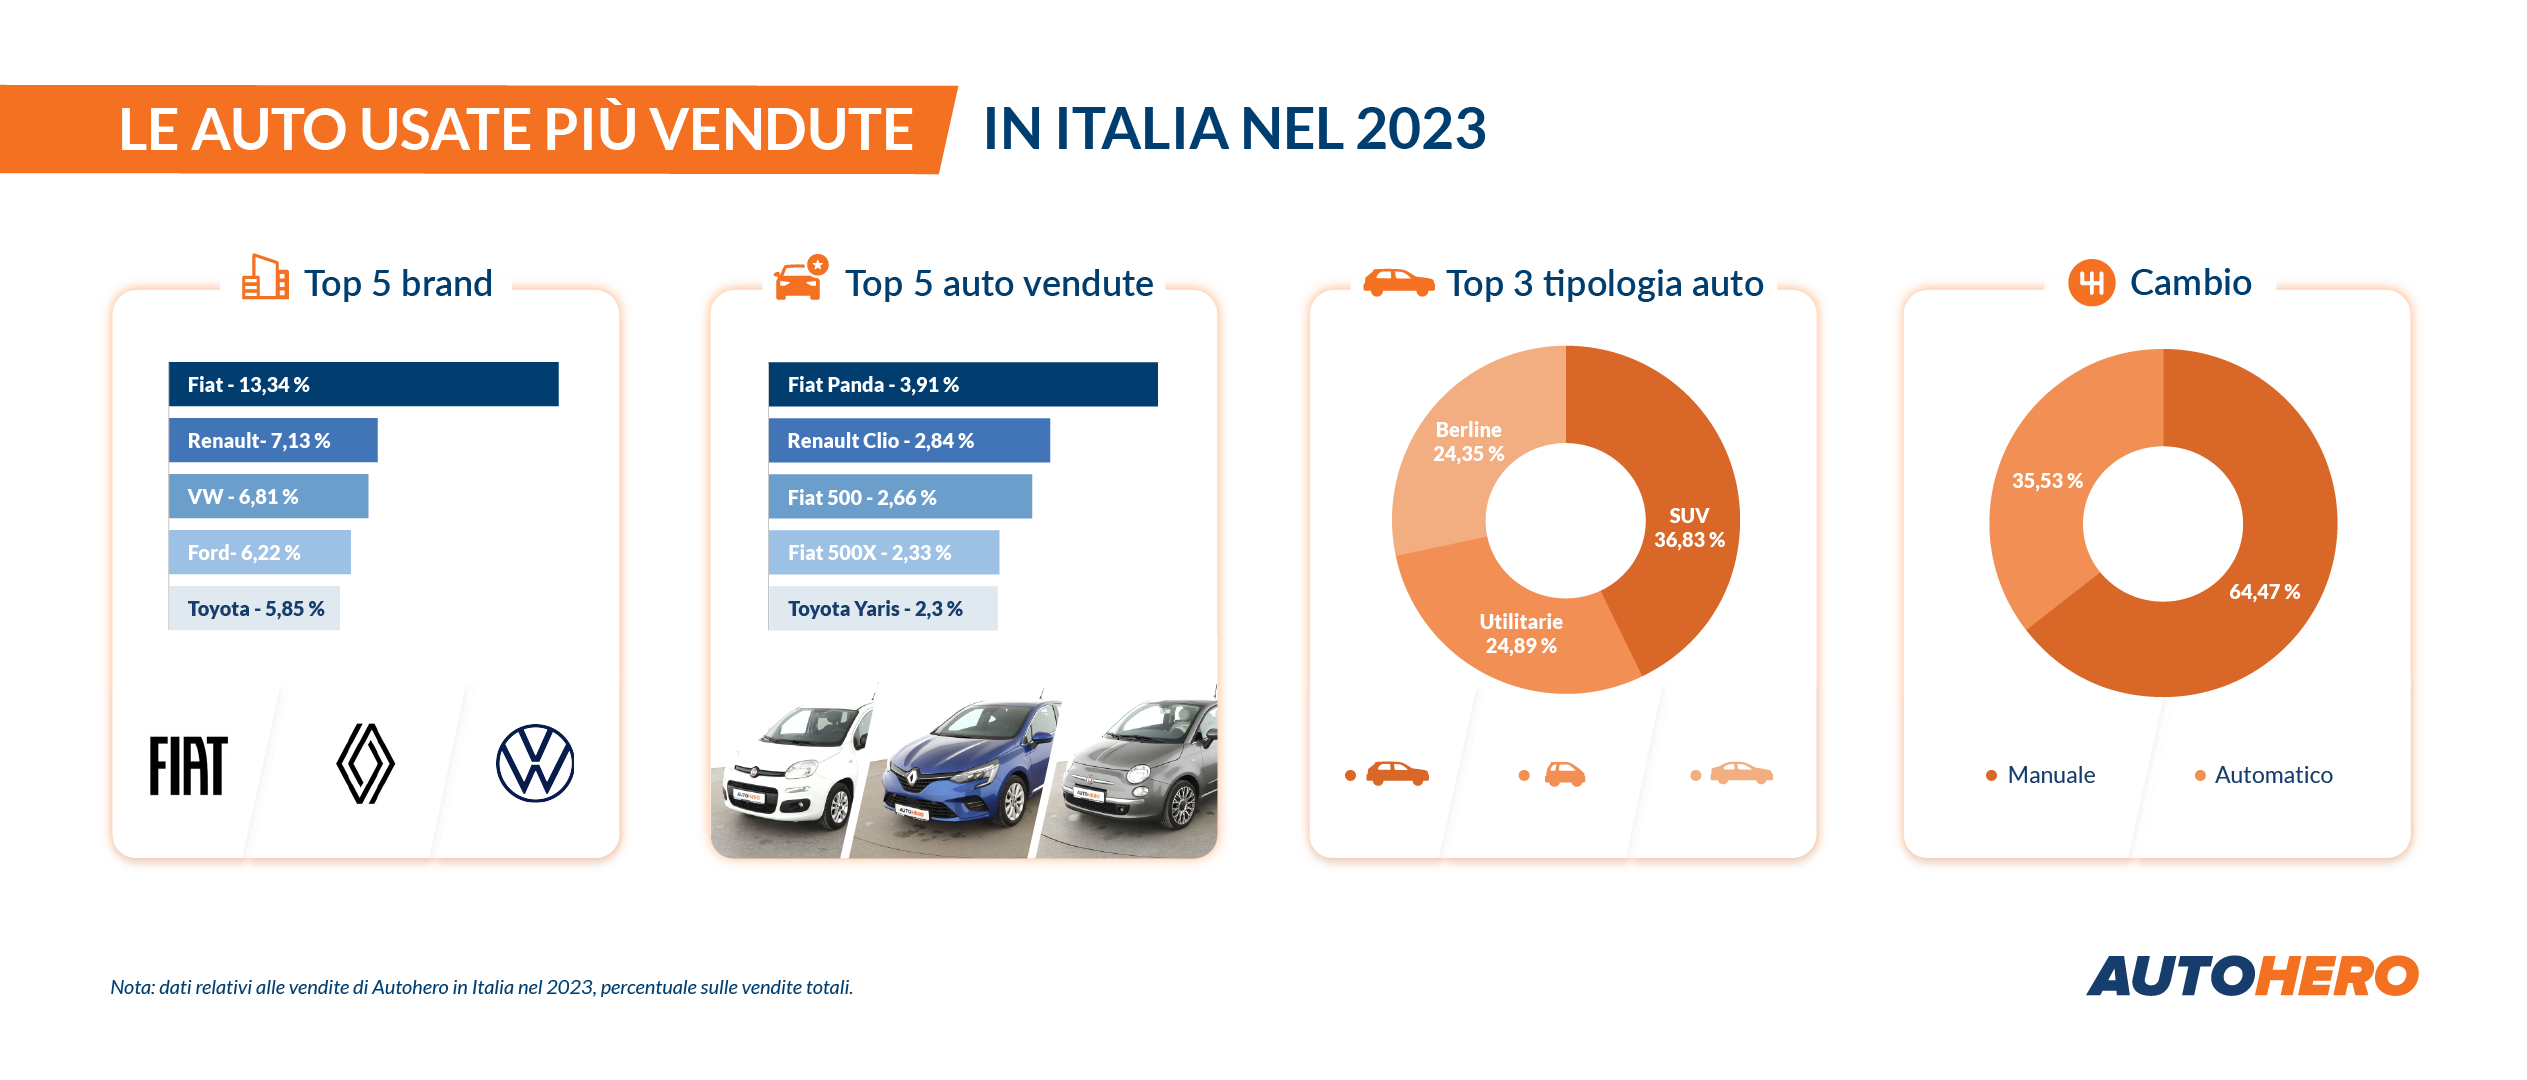 Fiat Panda, Renault Clio e Fiat 500  le auto usate più vendute su Autohero